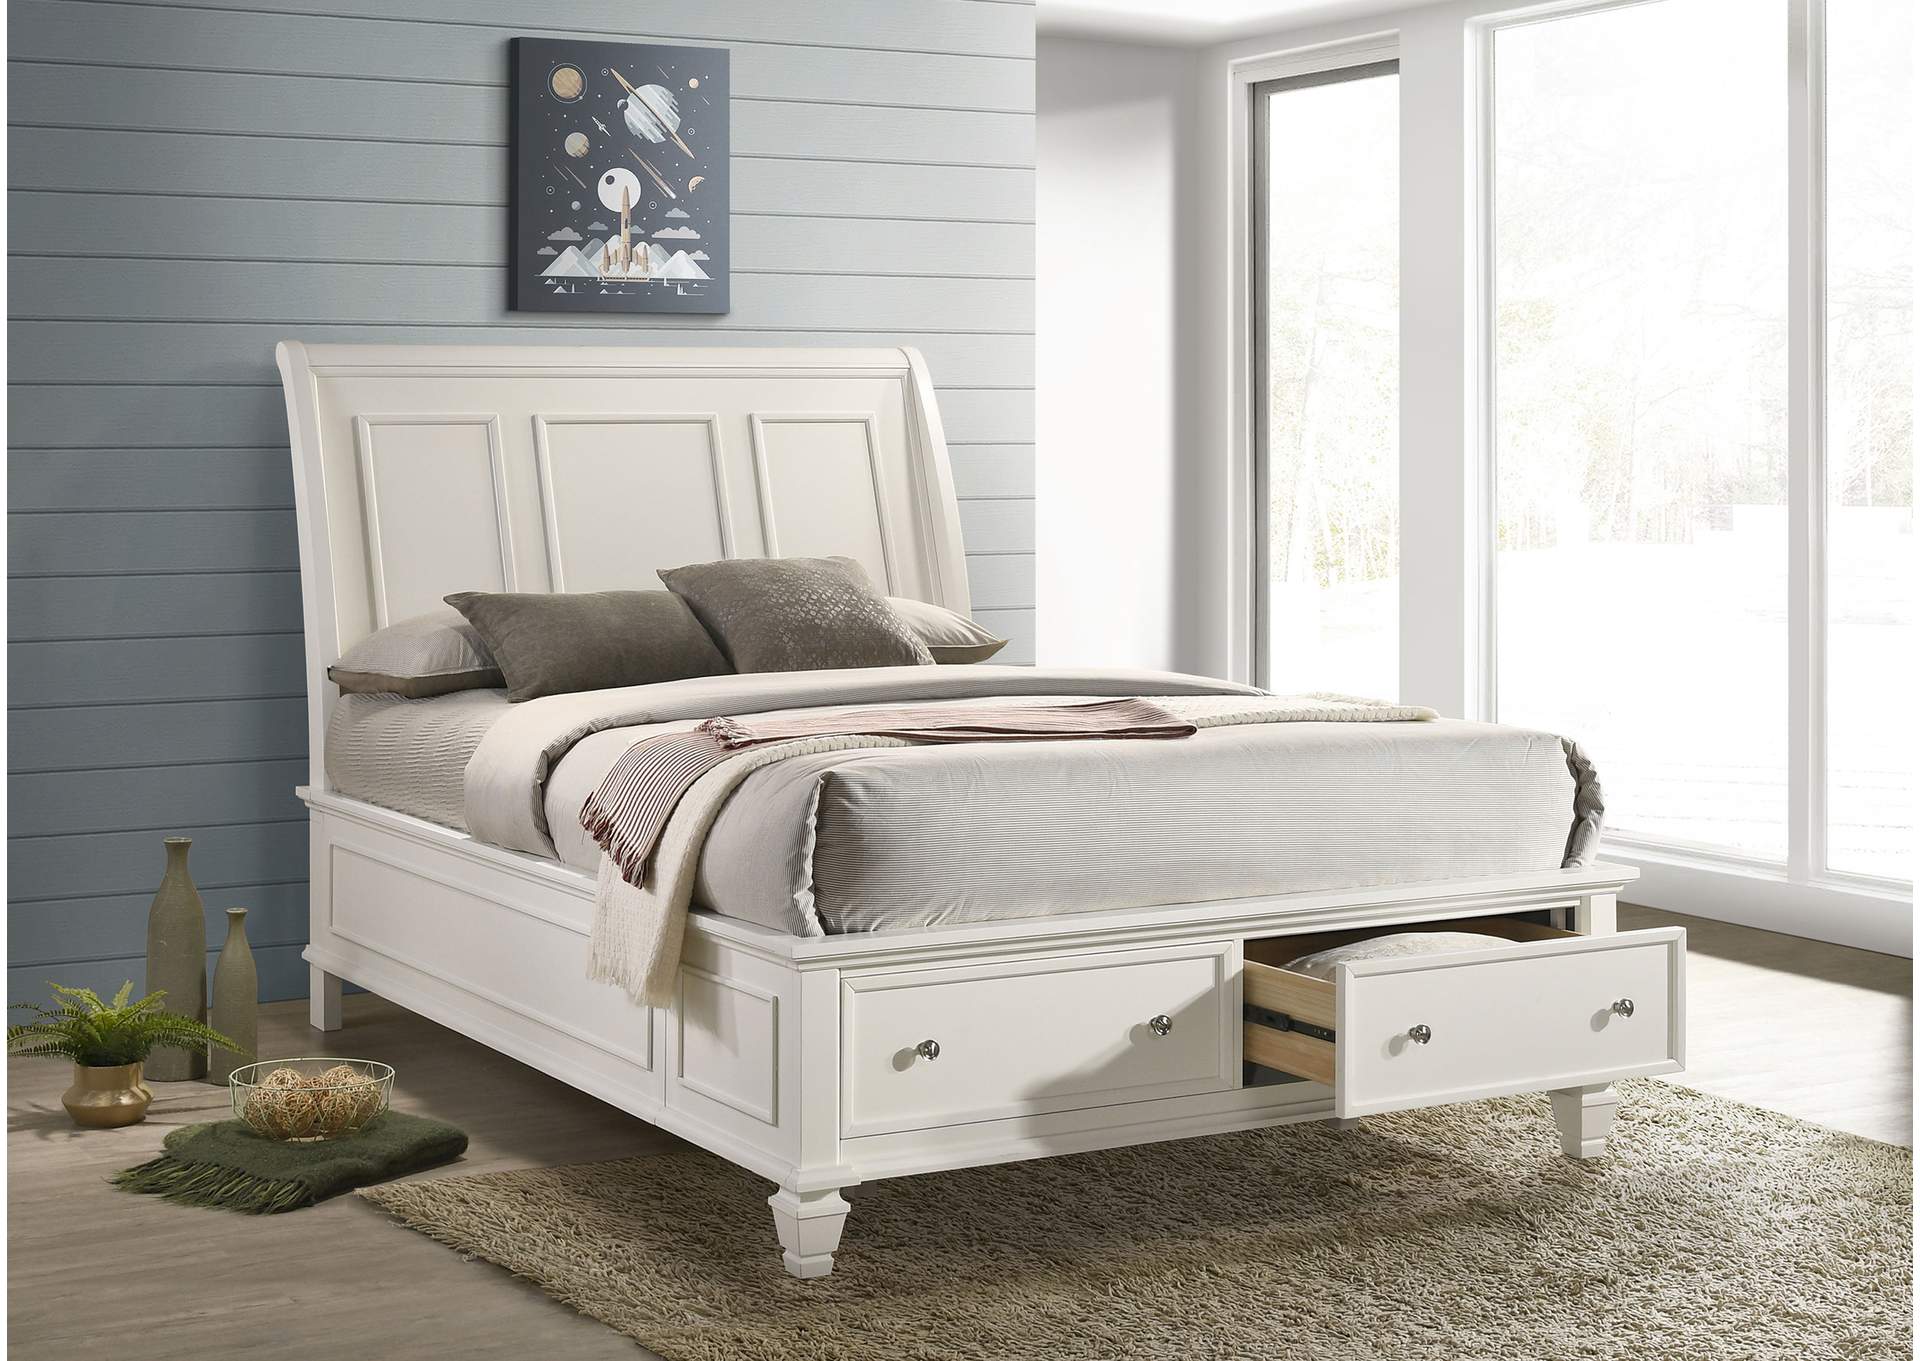 Sandy Beach Queen Storage Sleigh Bed White,Coaster Furniture